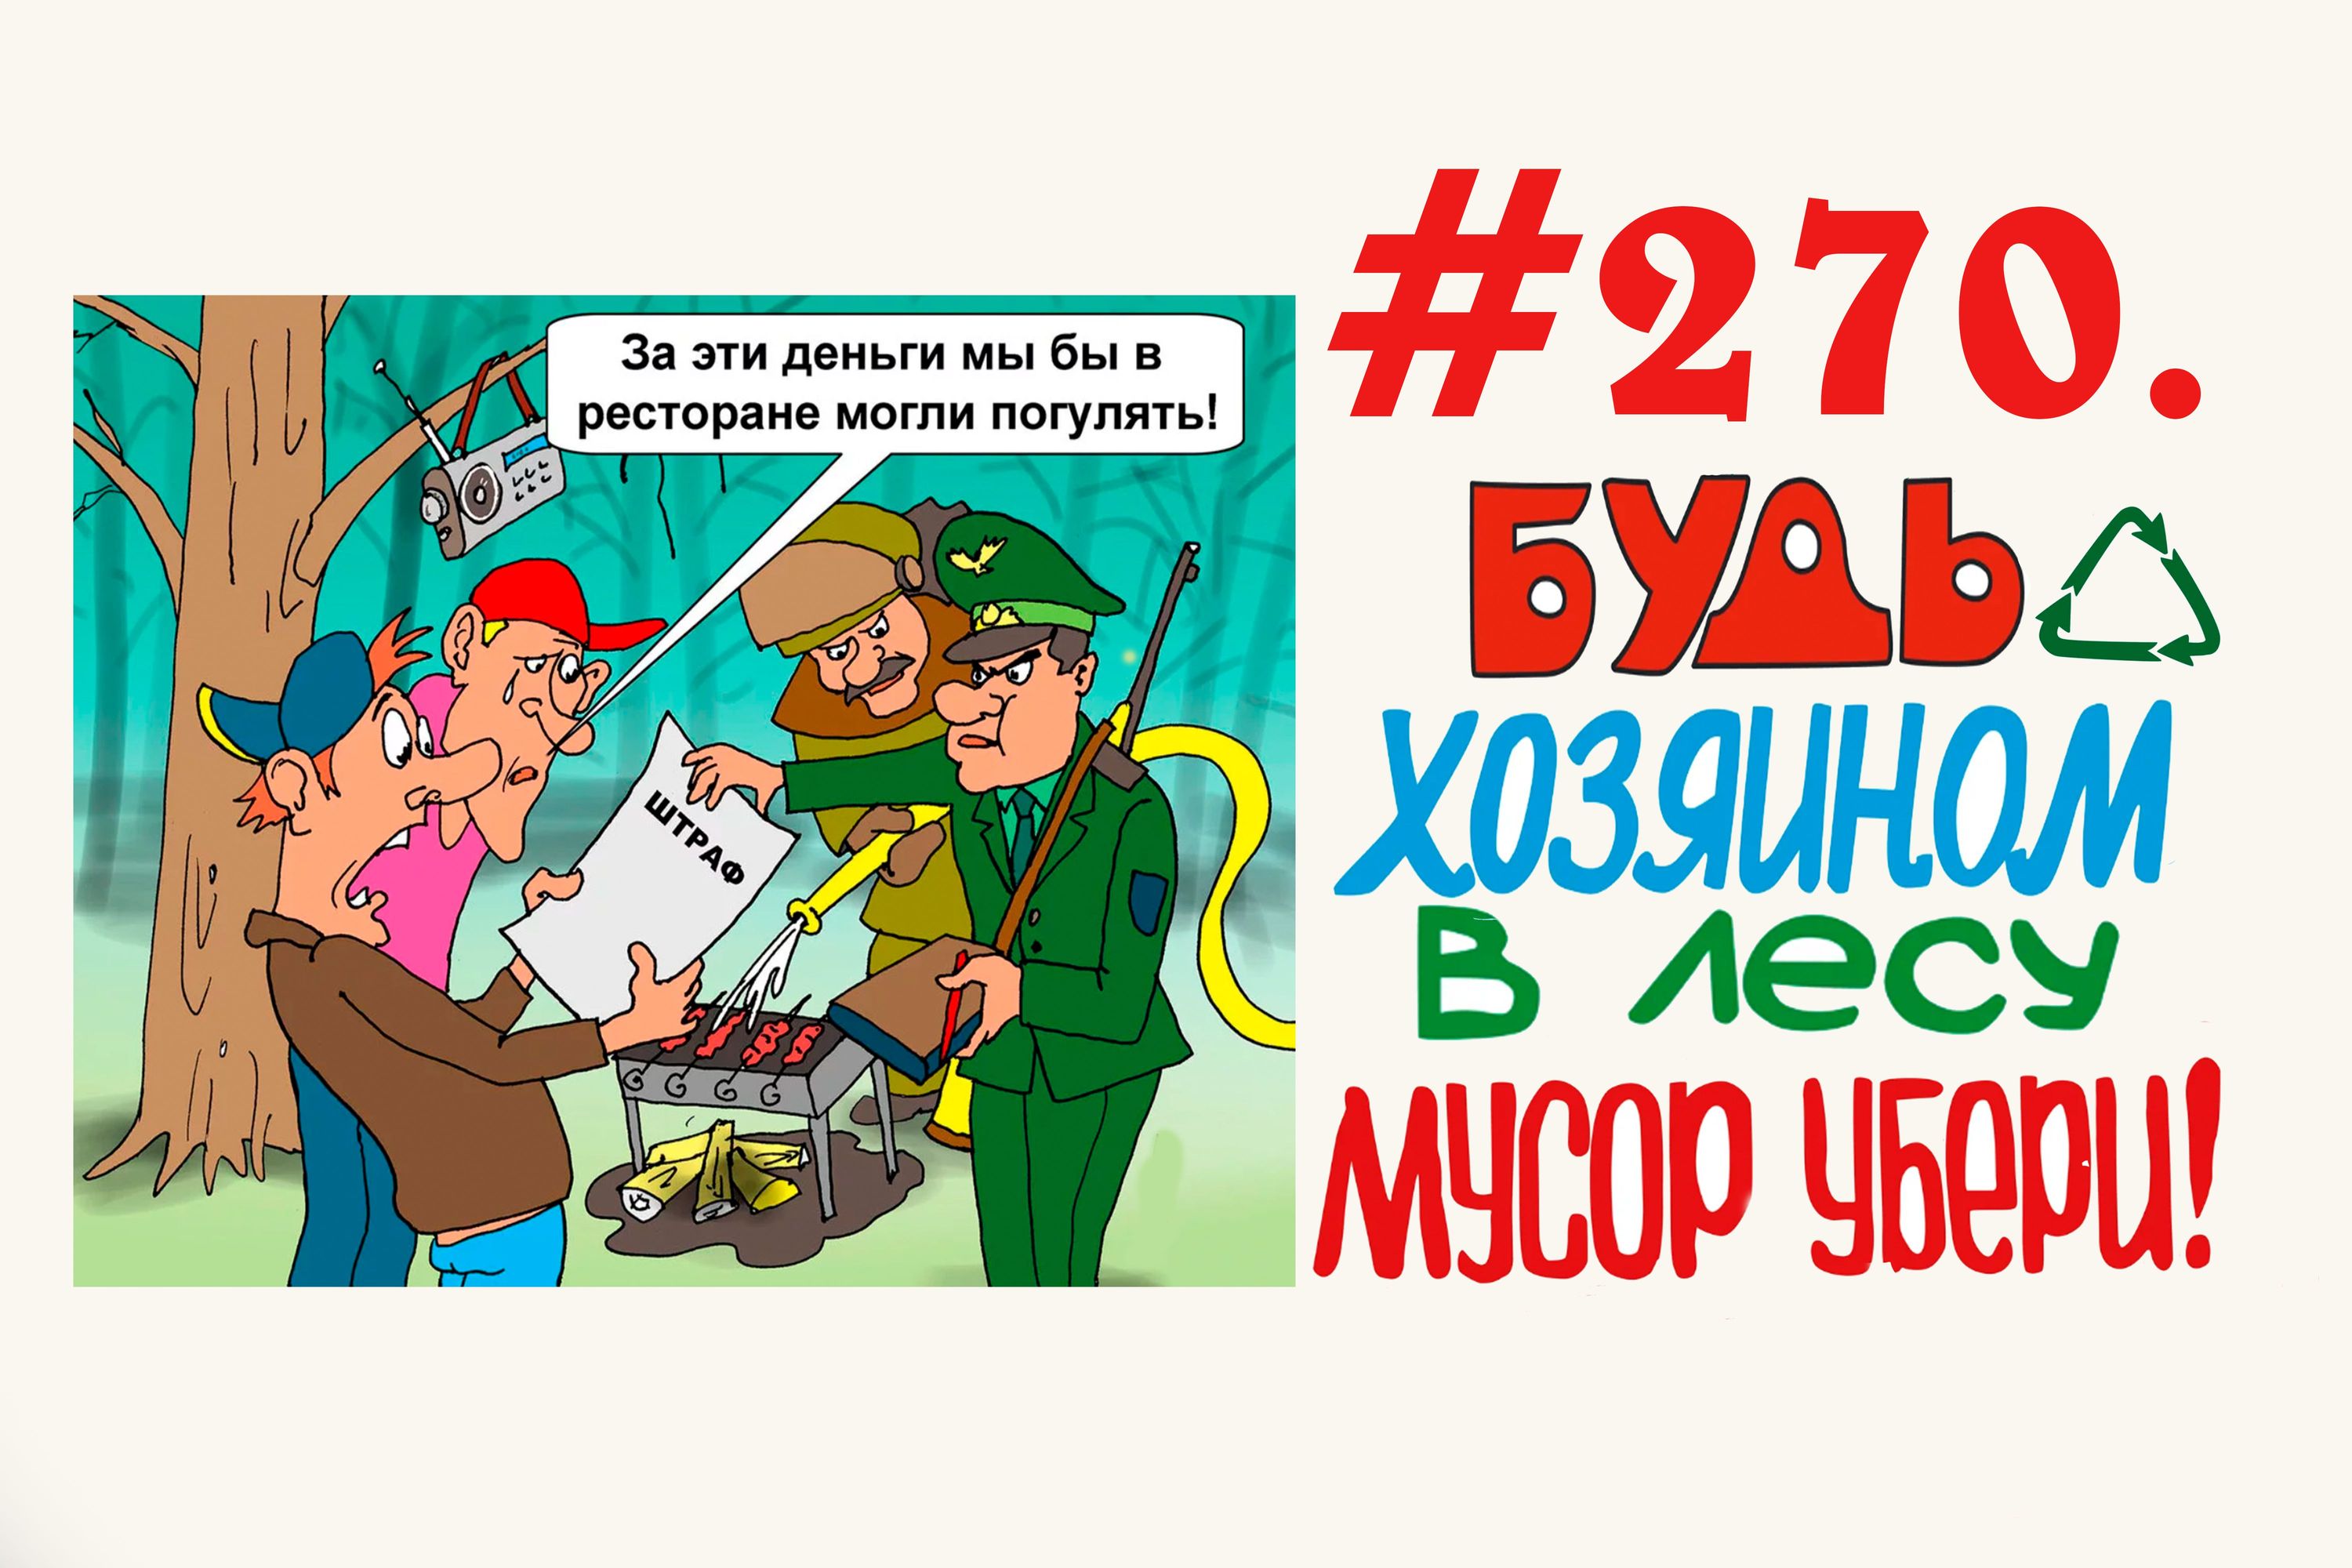 Экологический народный контроль в лесу ( 72 мешков мусора) #270 Орехово-Зуево